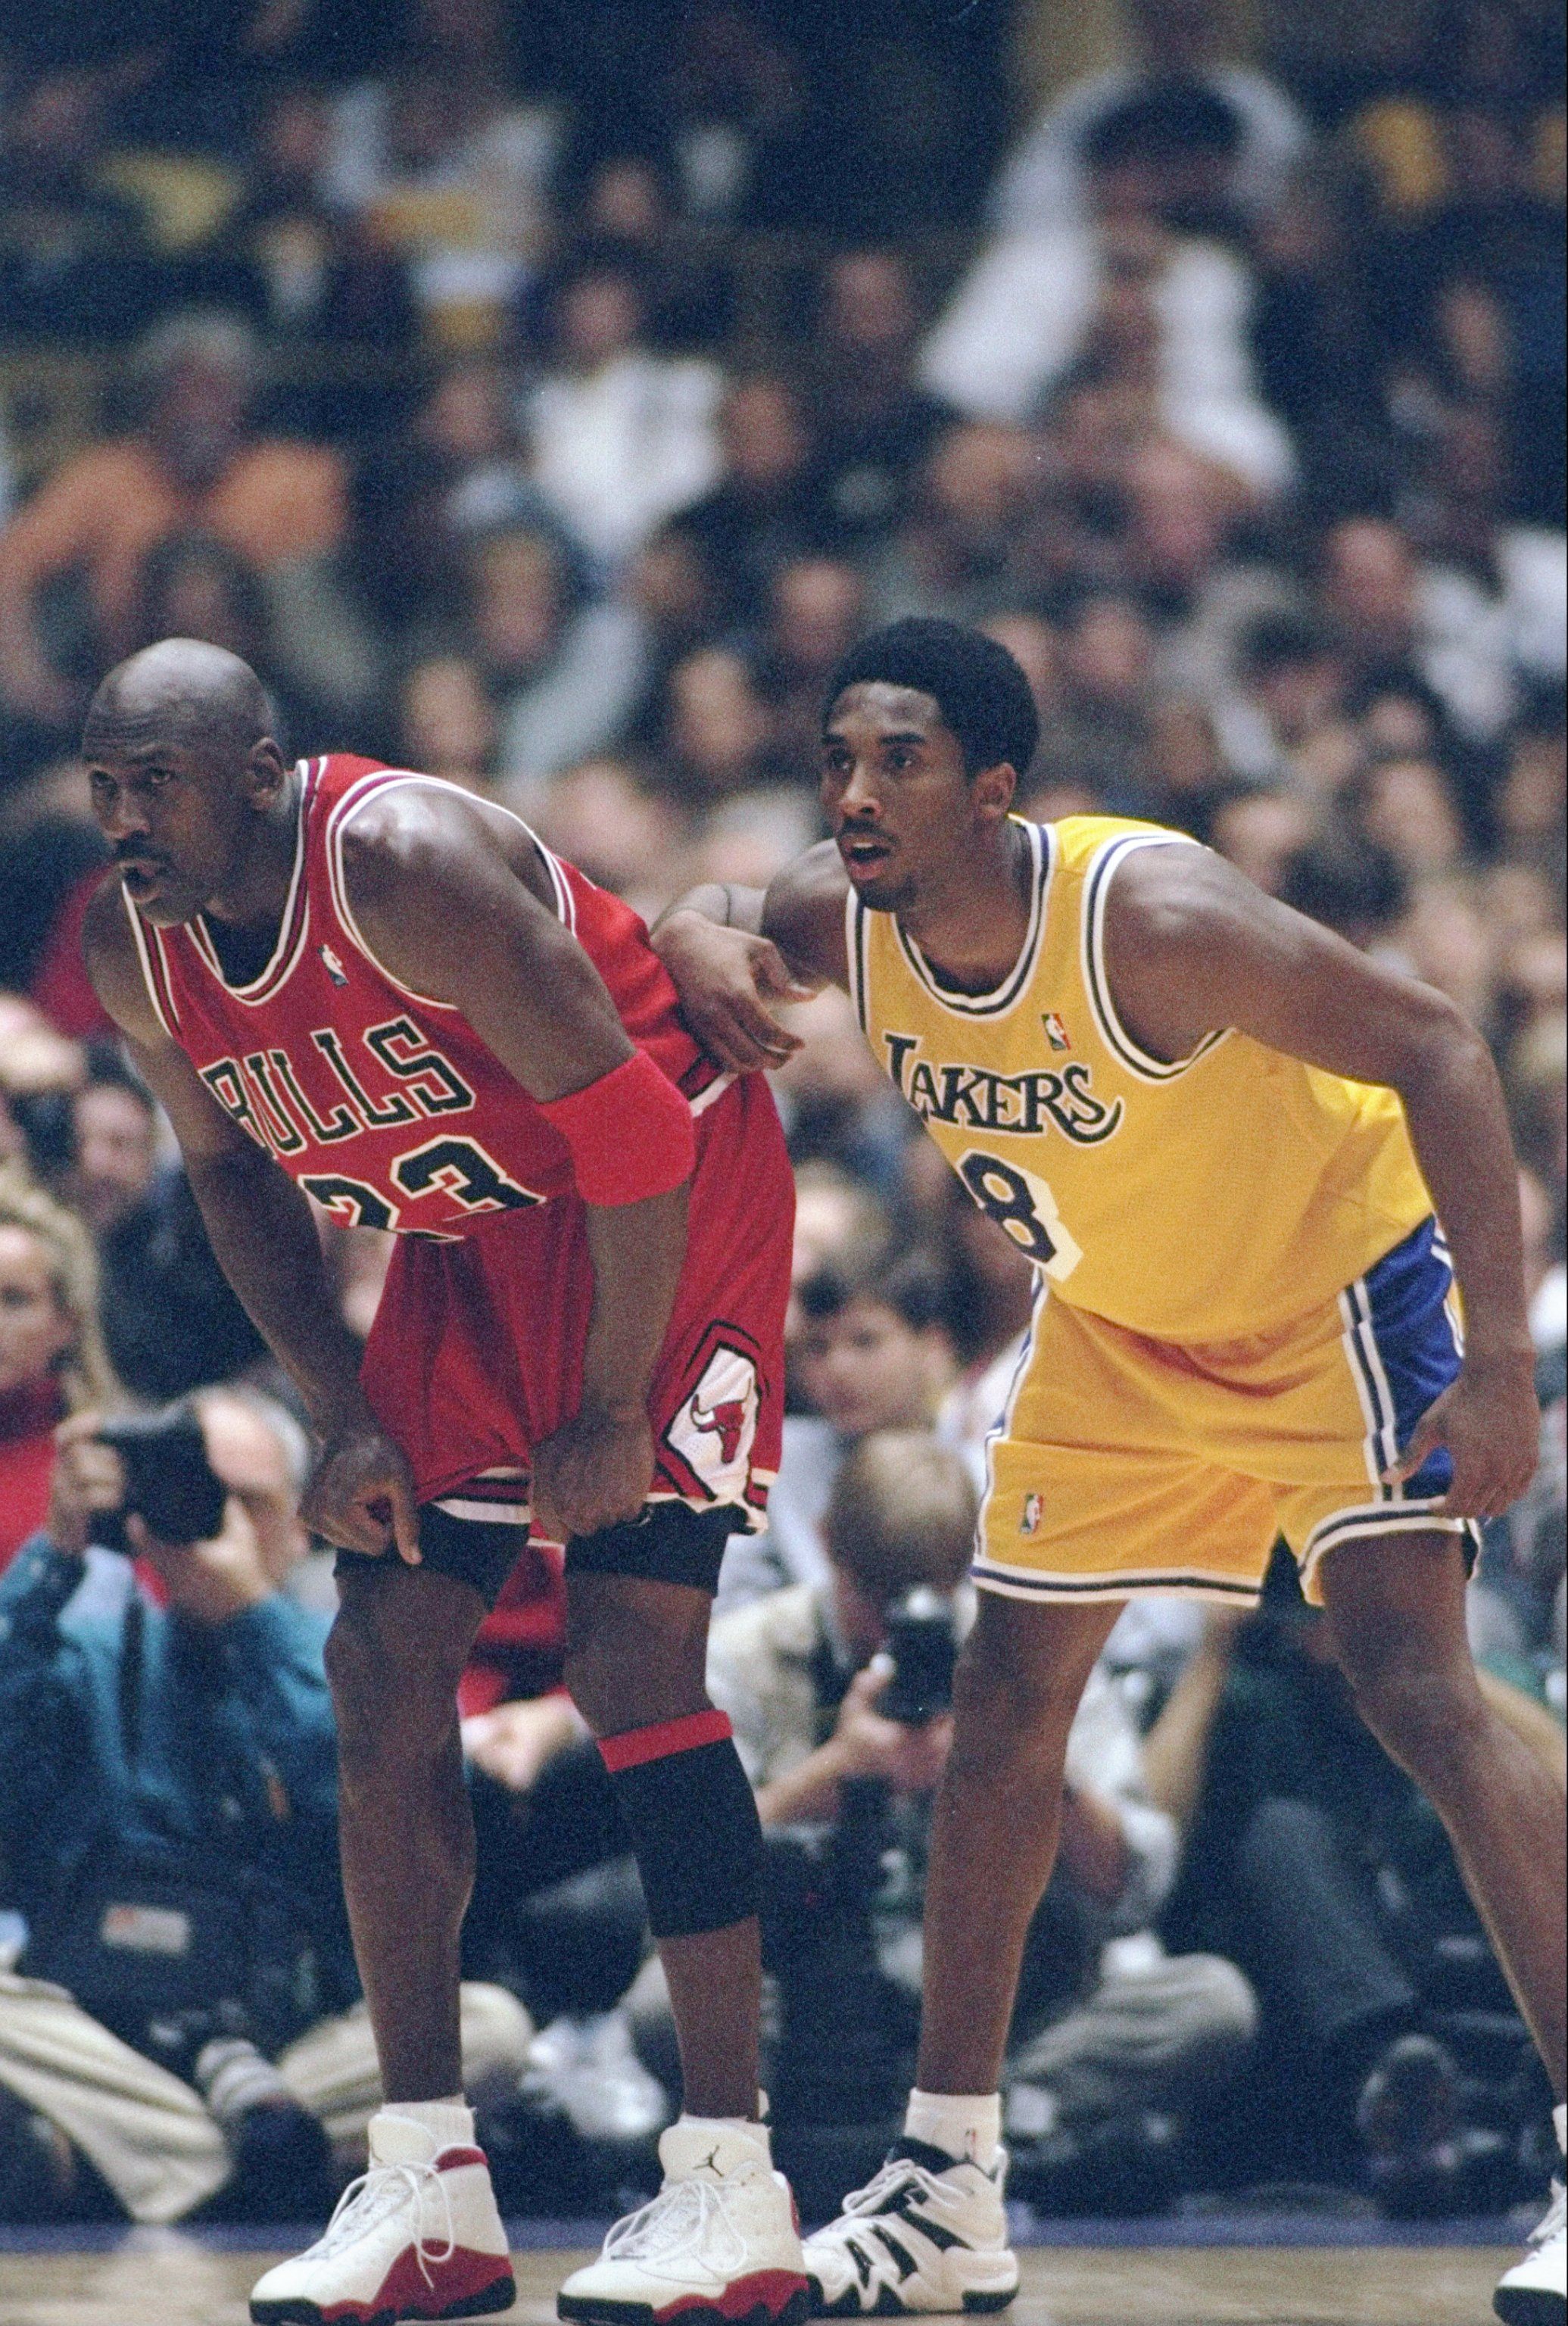 Michael Jordan  Kobe bryant wallpaper, Kobe bryant iphone